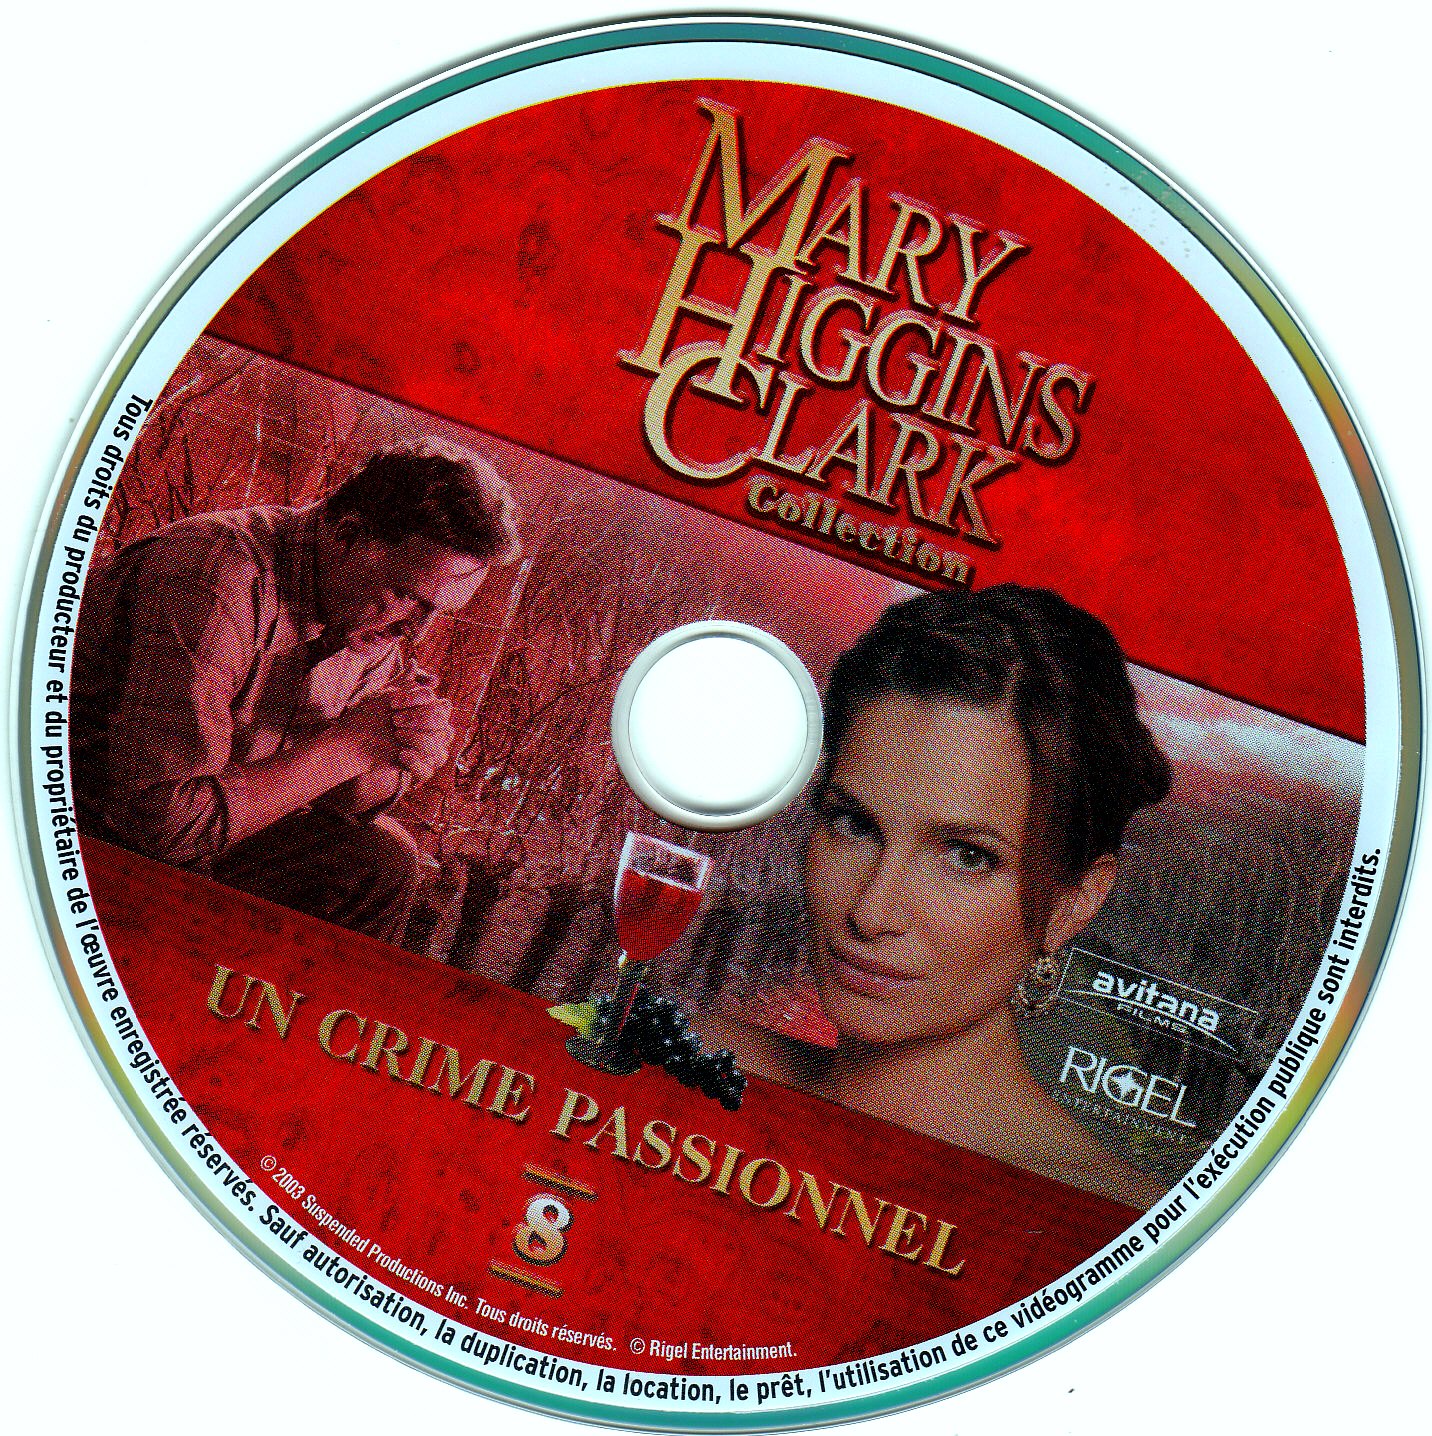 Mary Higgins Clark vol 08 - Un crime passionnel